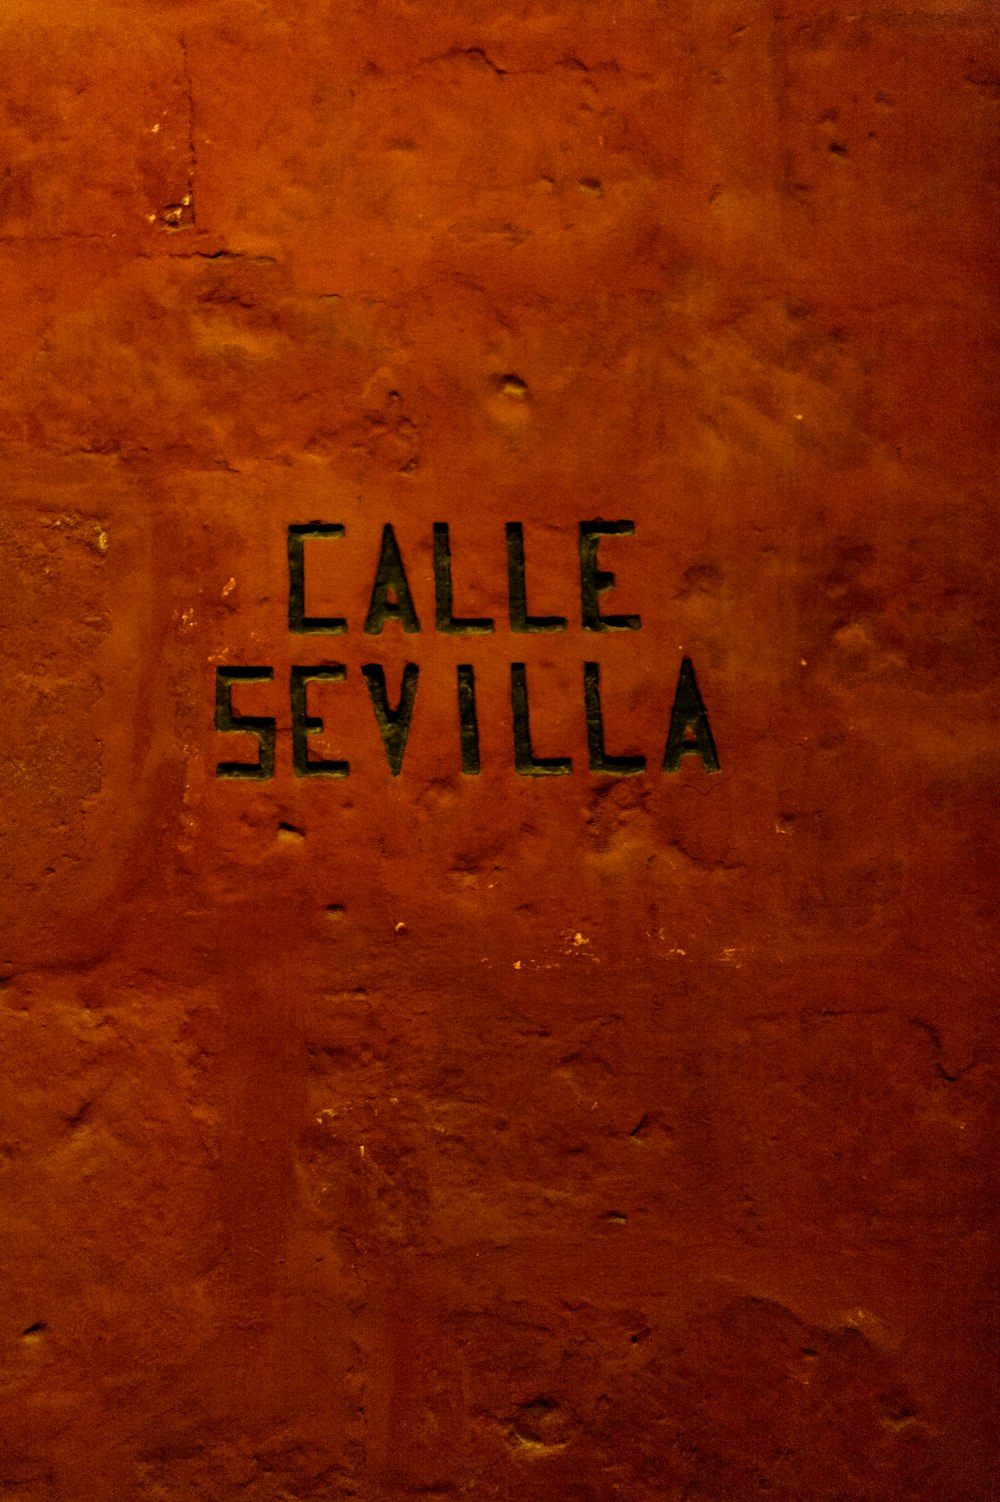 Calle Sevilla name